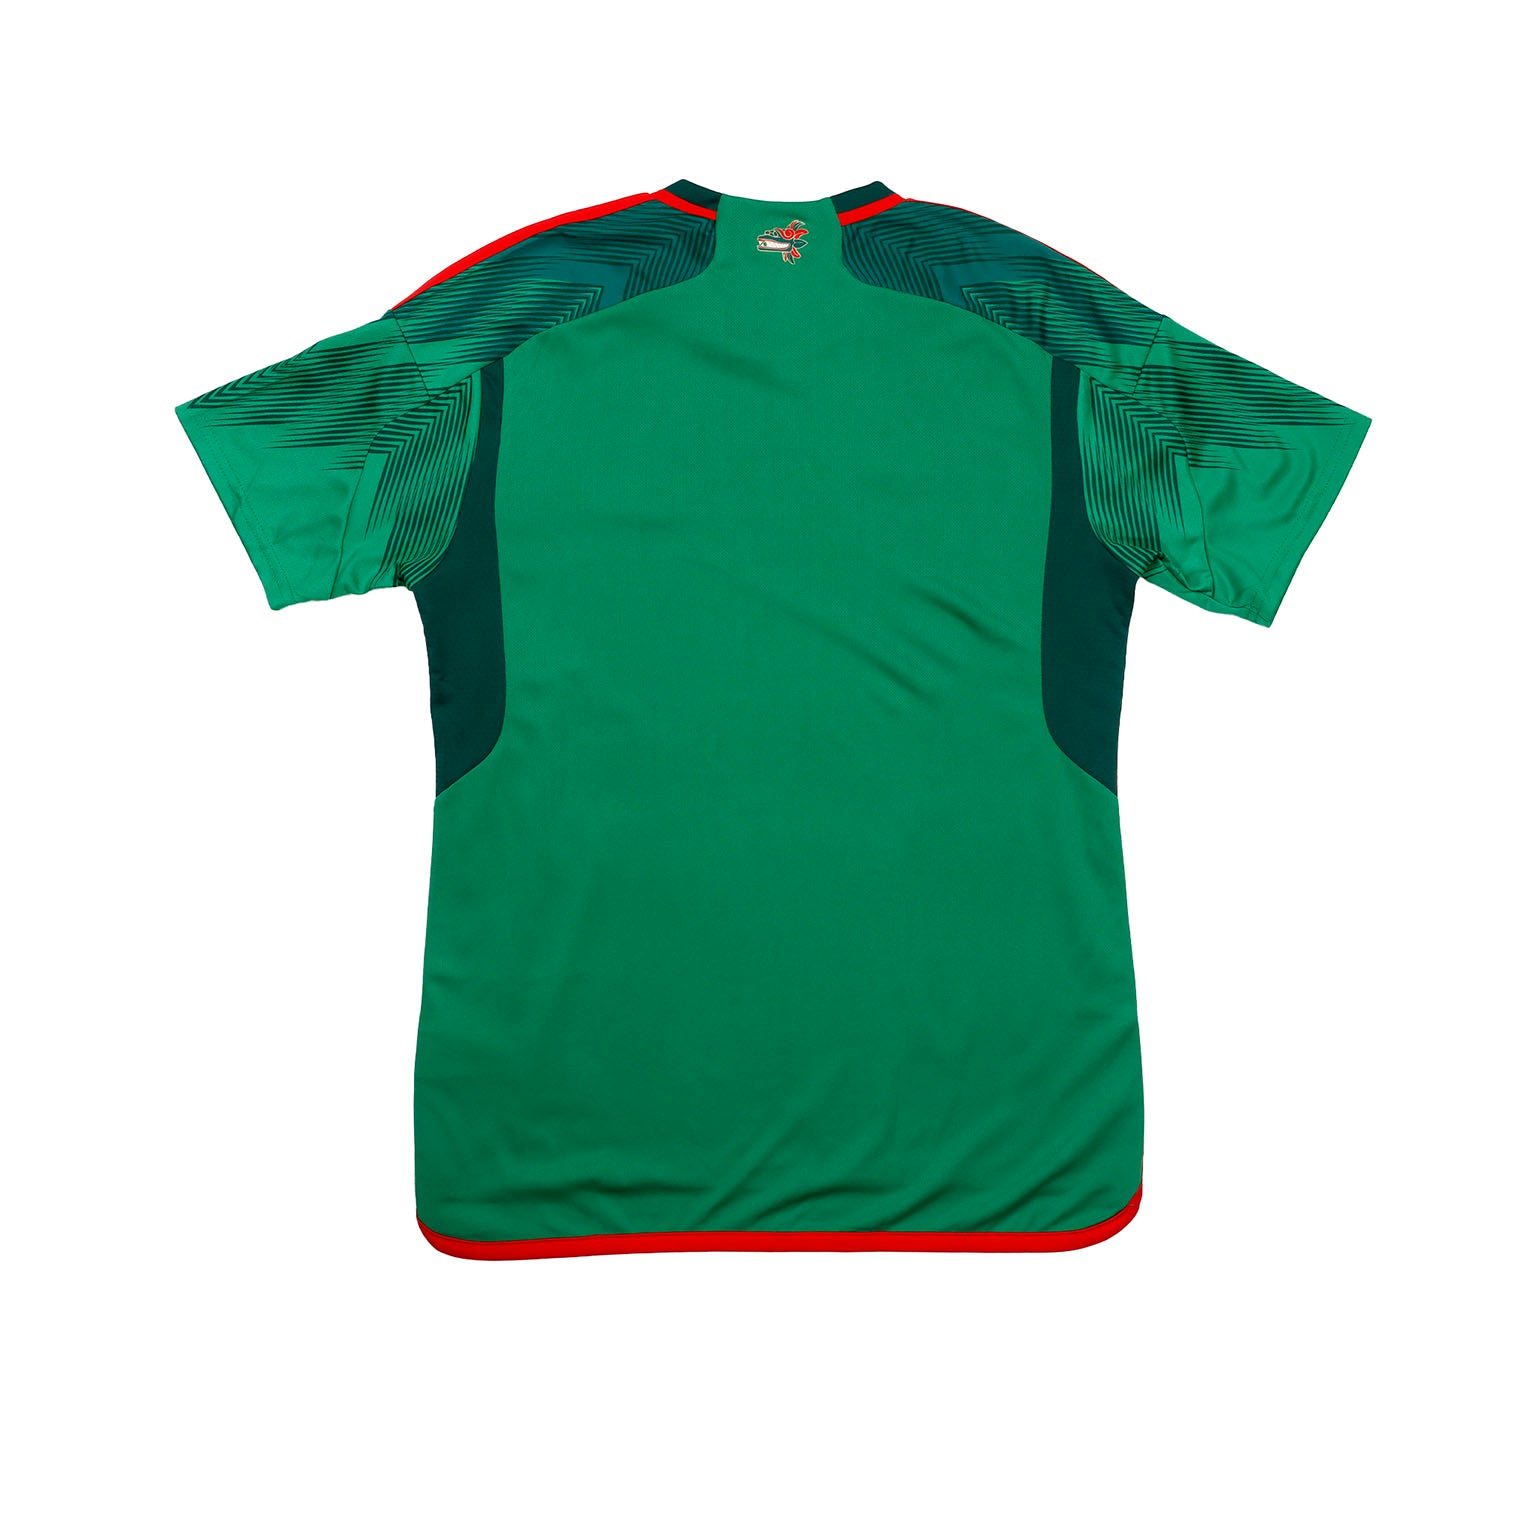 Jersey Adidas Selección Mexicana